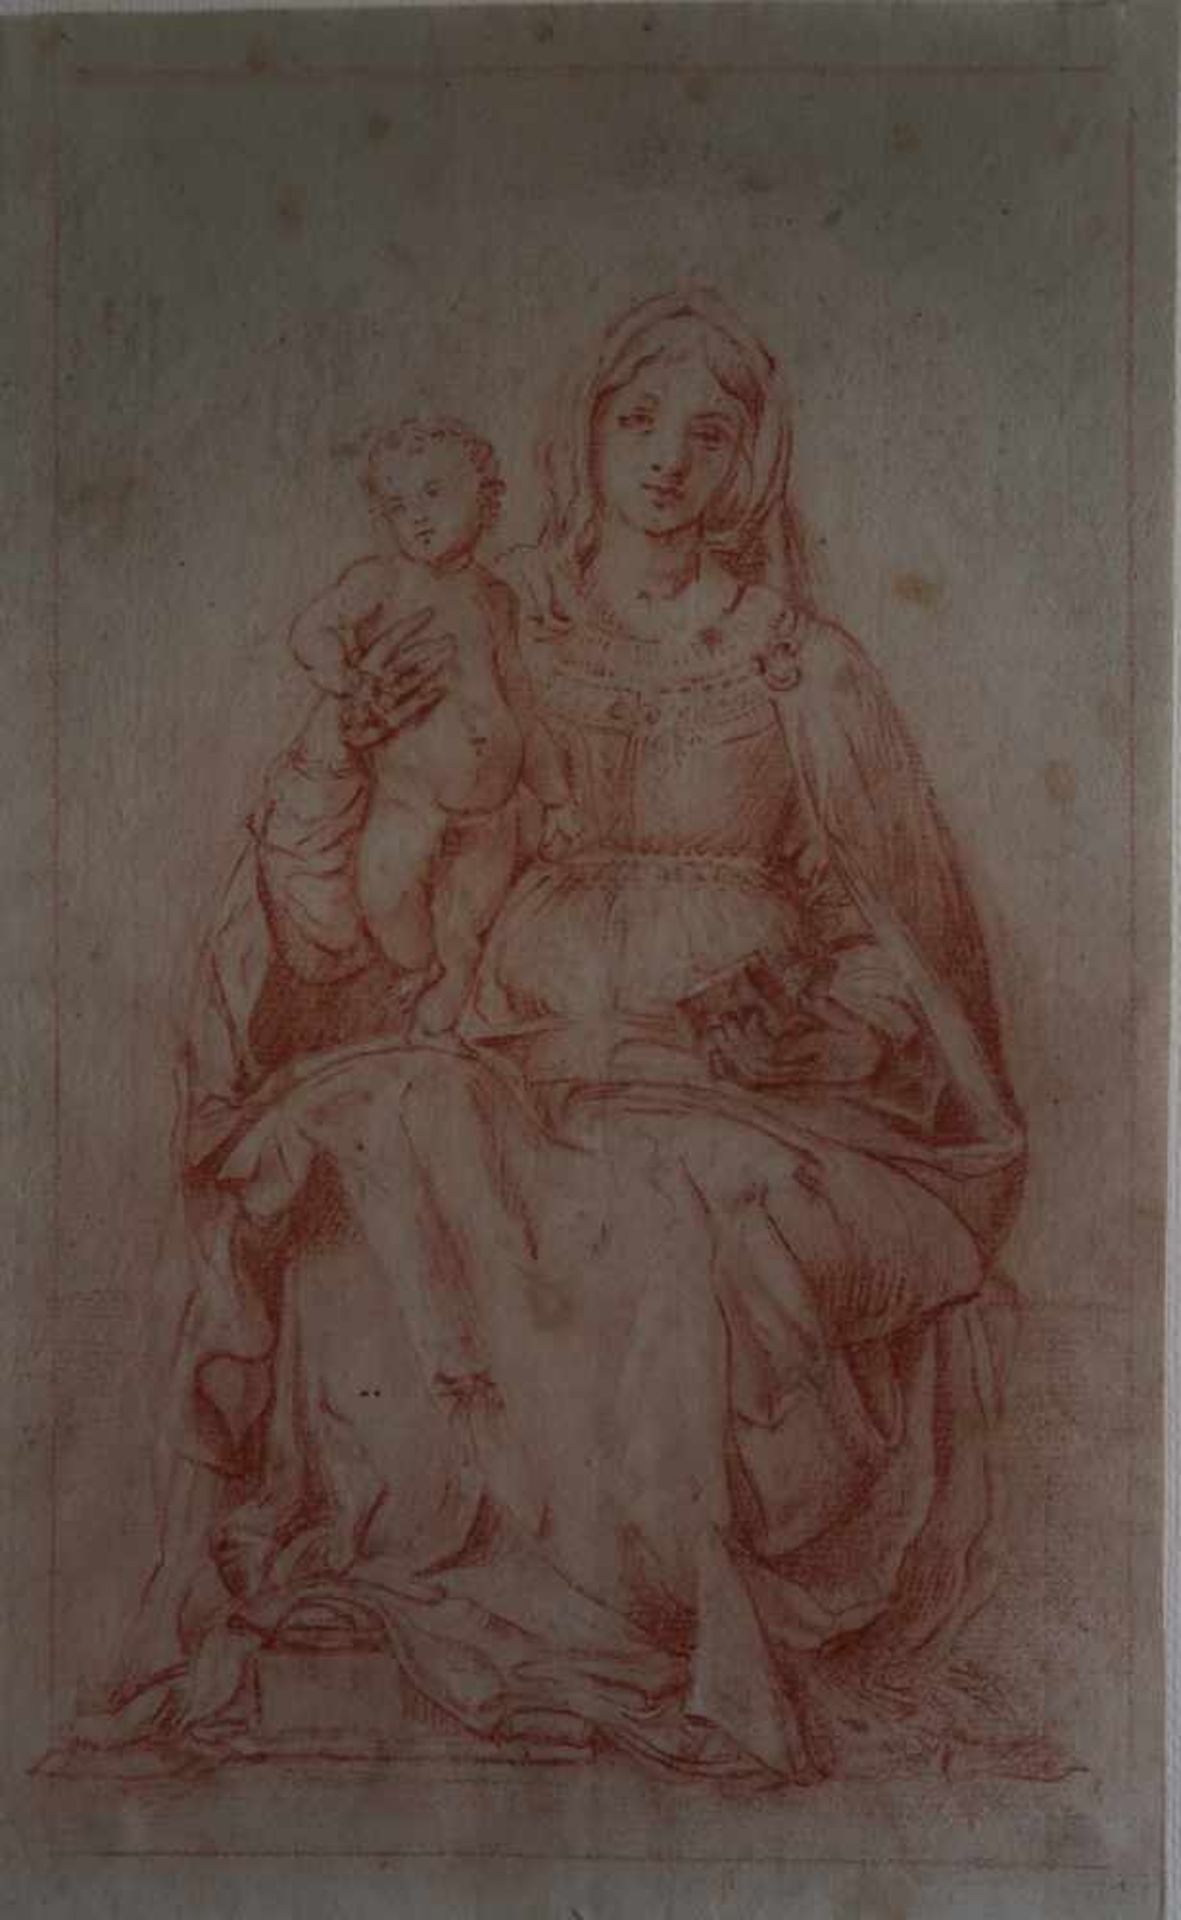 MONTAGNA Bartolomeo (d'après), ÉCOLE FRANÇAISE, du XIXème siècle [FR].Vierge à l'enfant, sanguine (